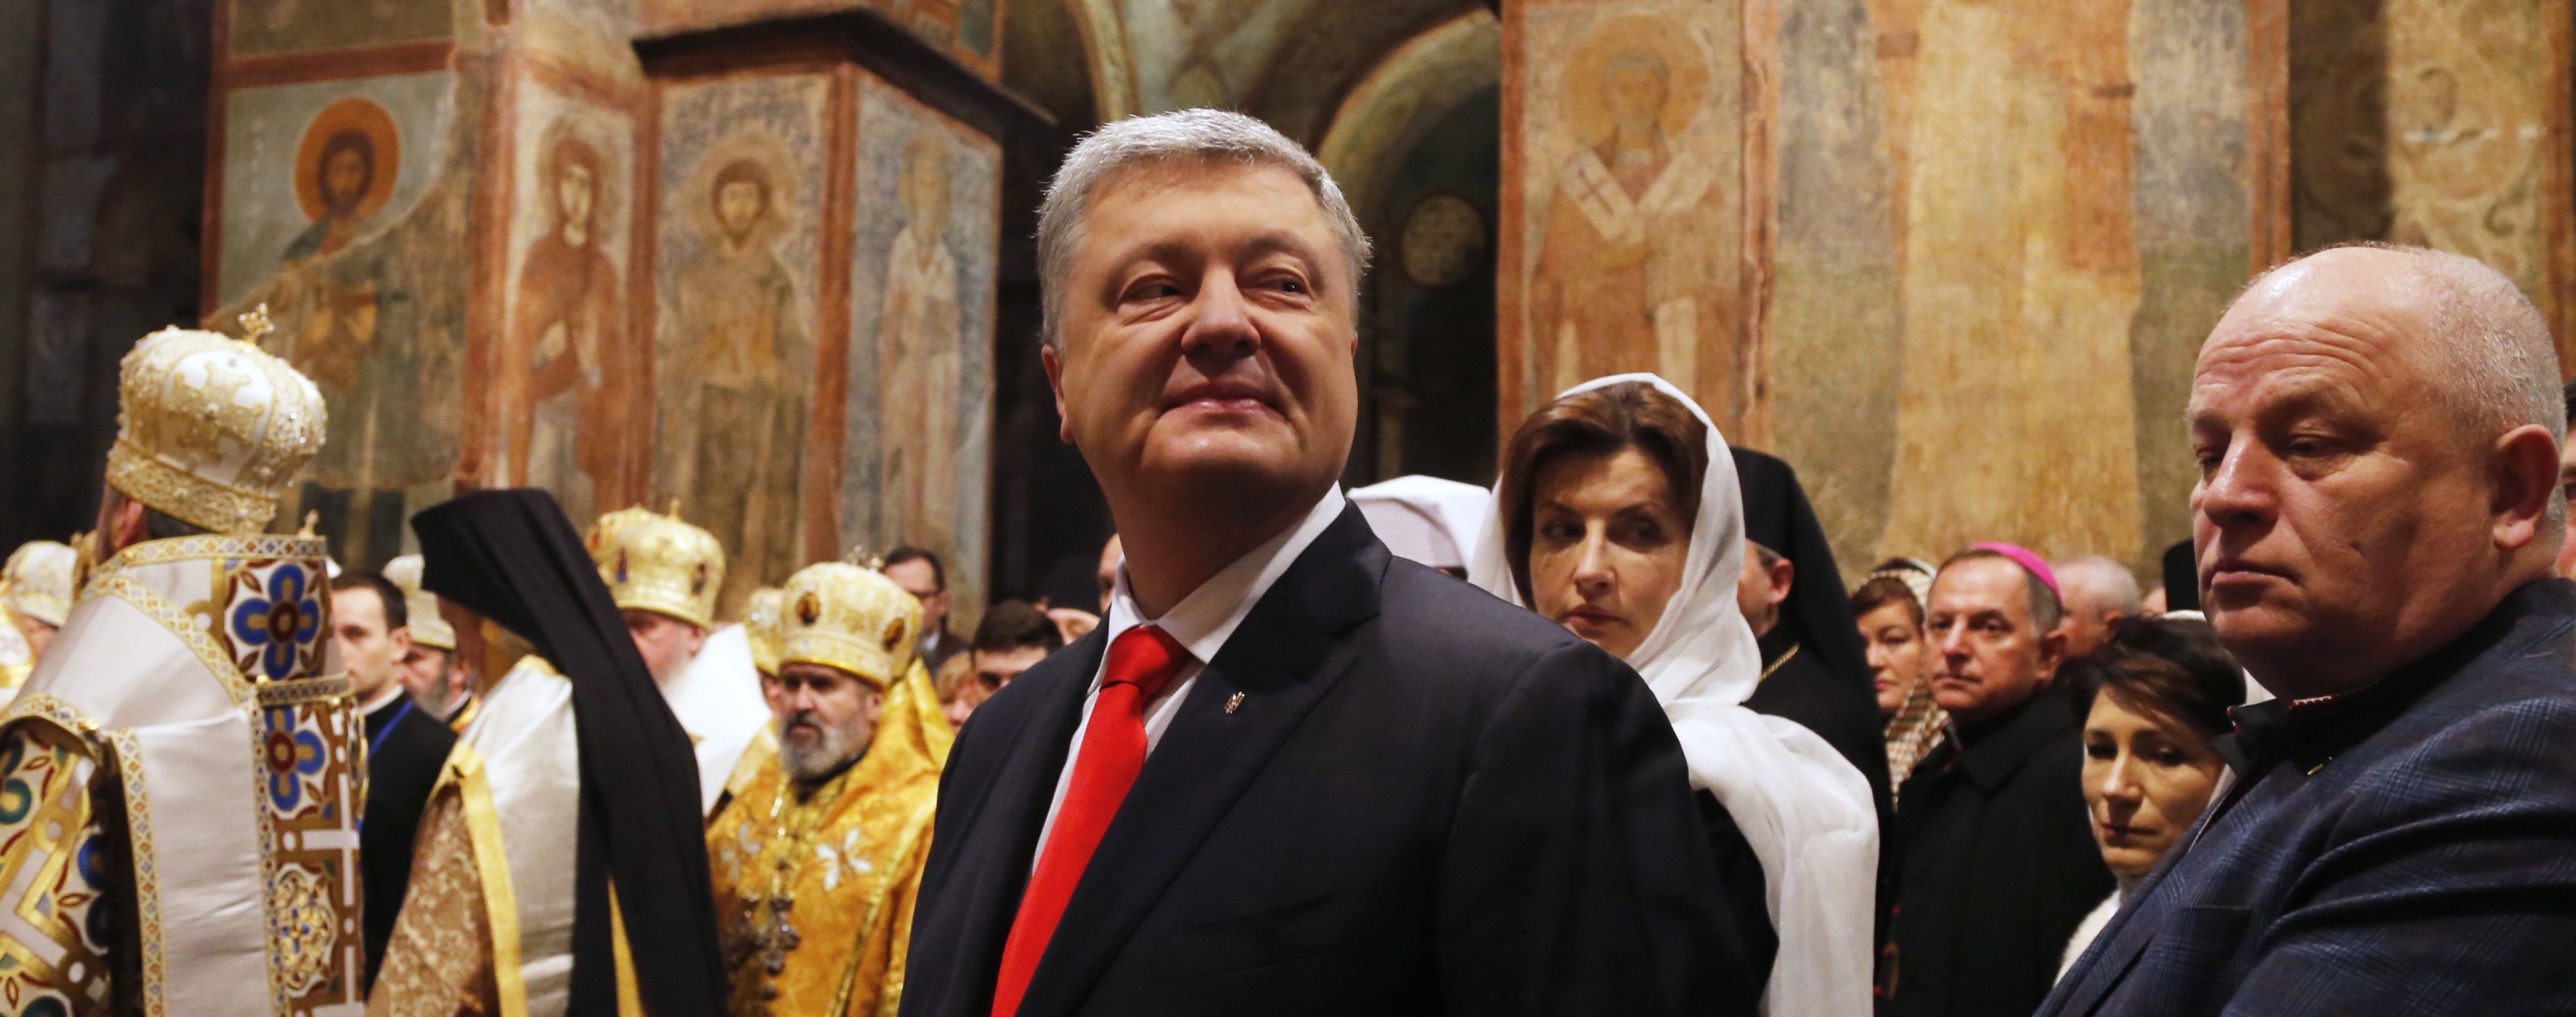 "Украина получила нового лидера". Порошенко поздравил митрополита Епифания с интронизацией